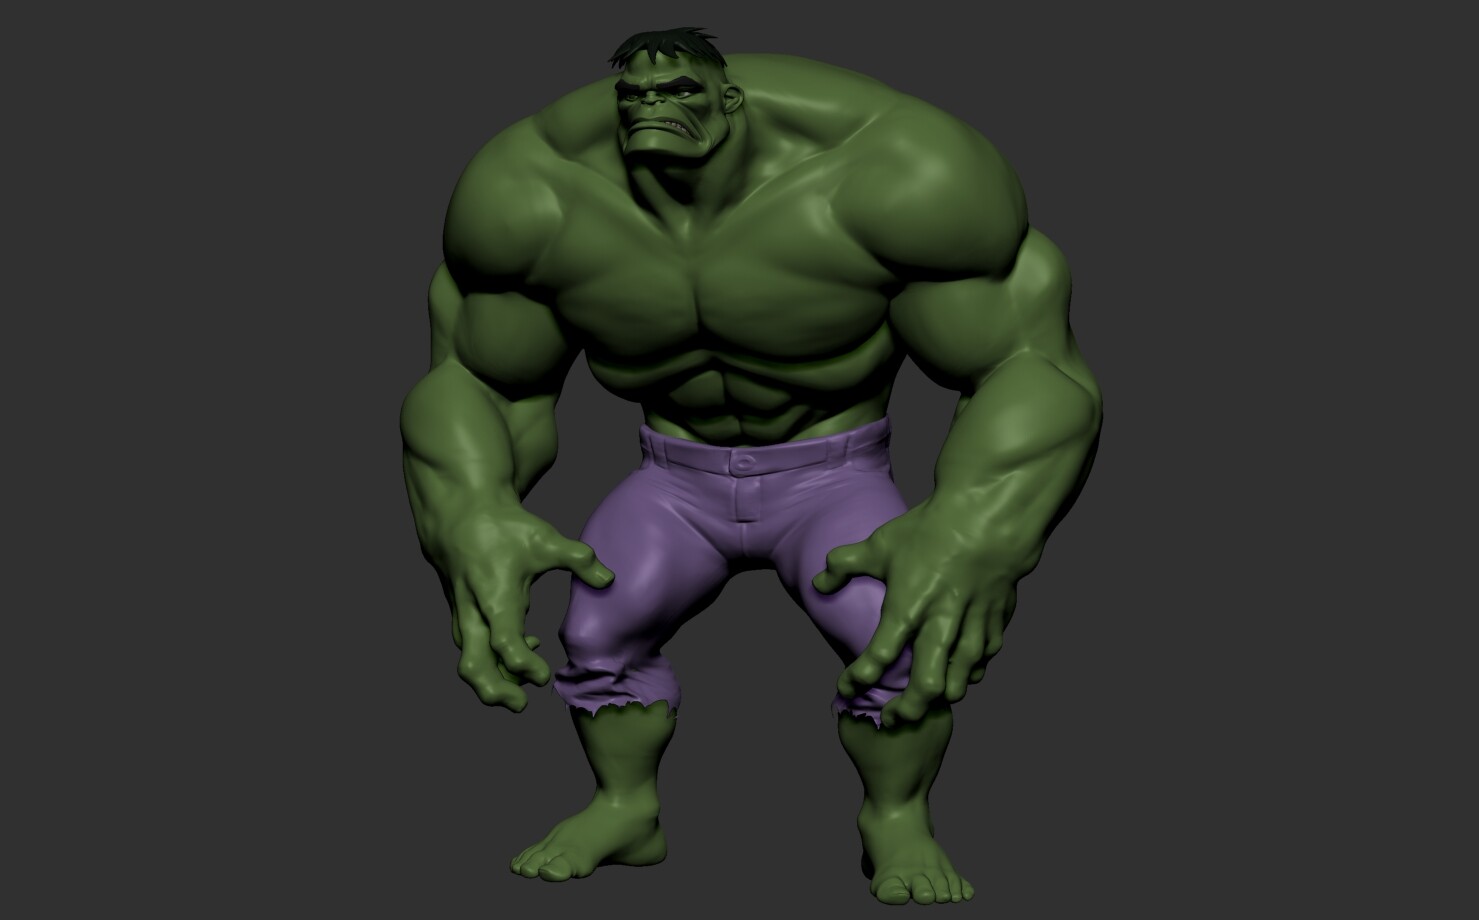 ArtStation - Hulk stylized